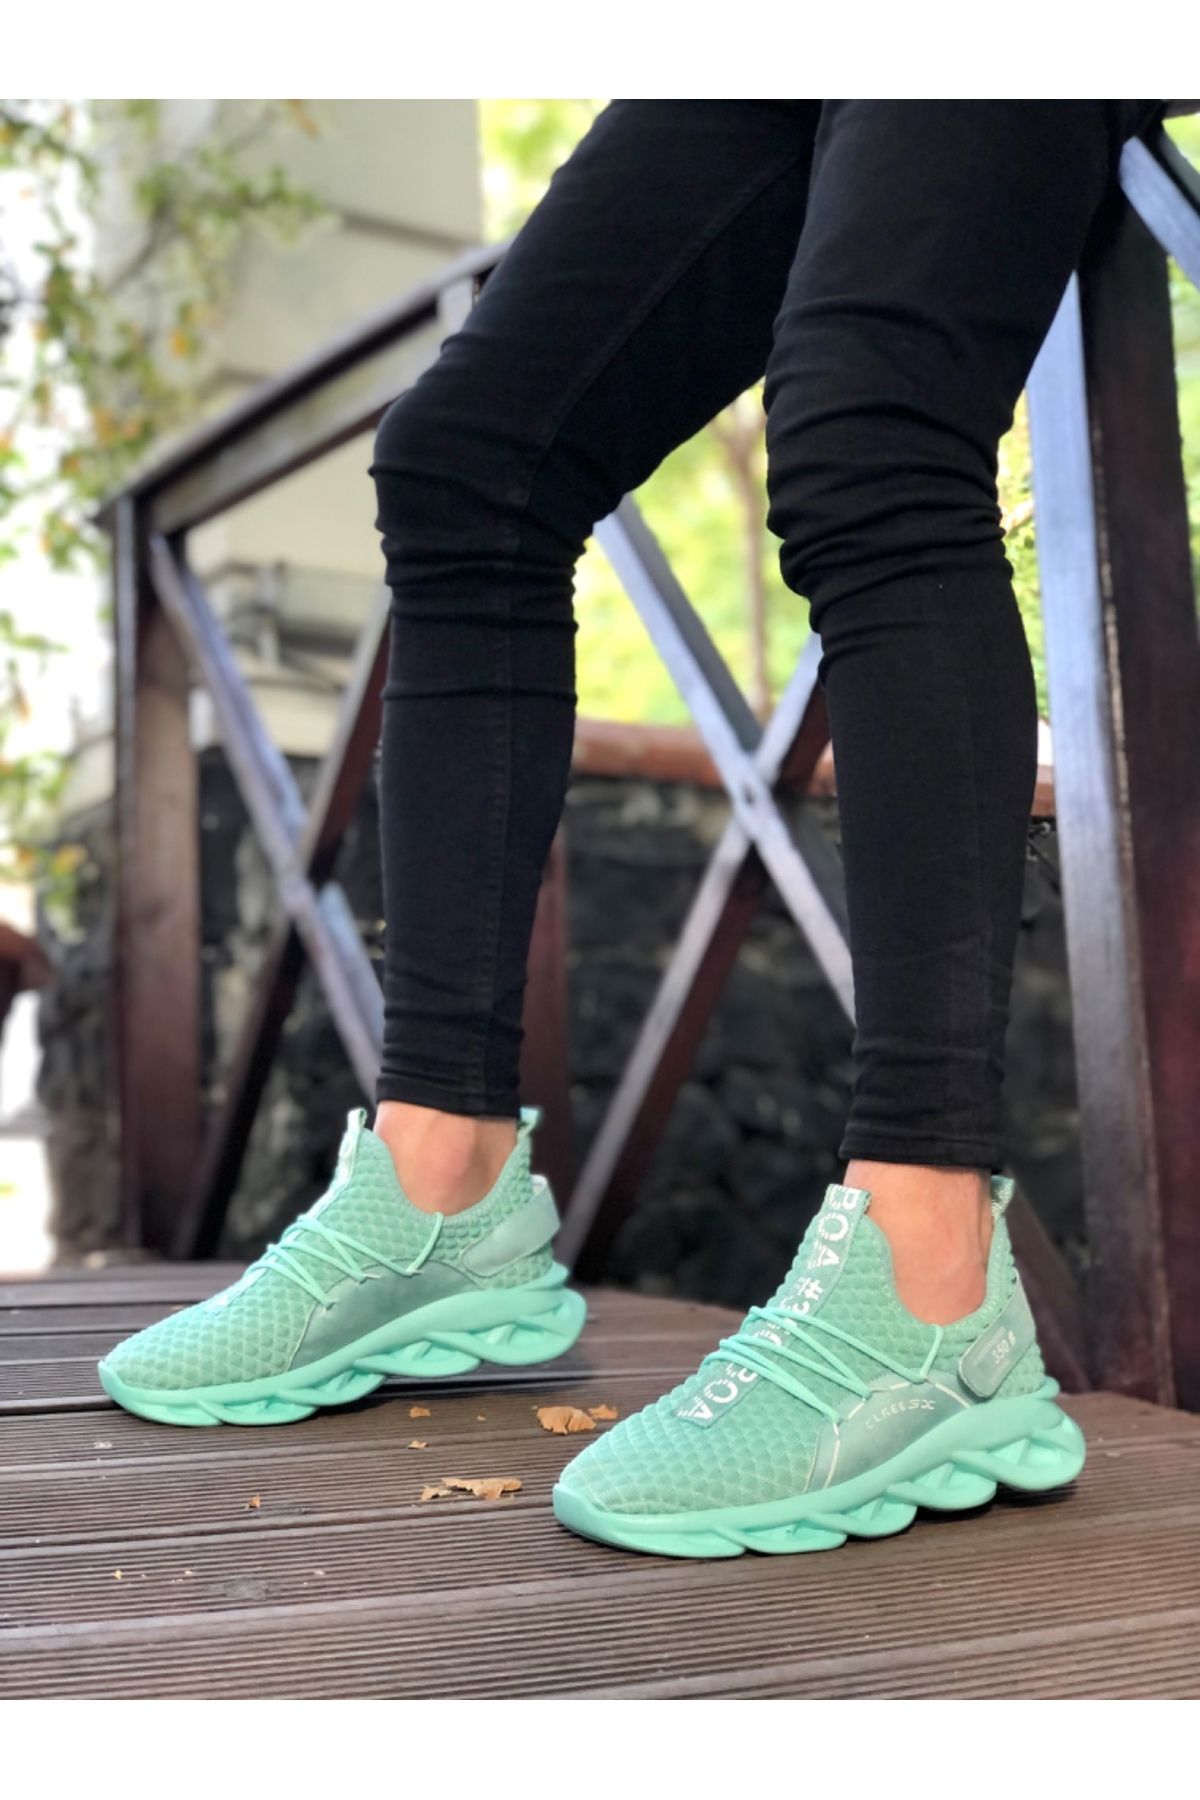 BOA Ba0350 Yüksek Taban Tarz Sneakers Cırt Detaylı Mint Yeşili Erkek Spor Ayakkabısı